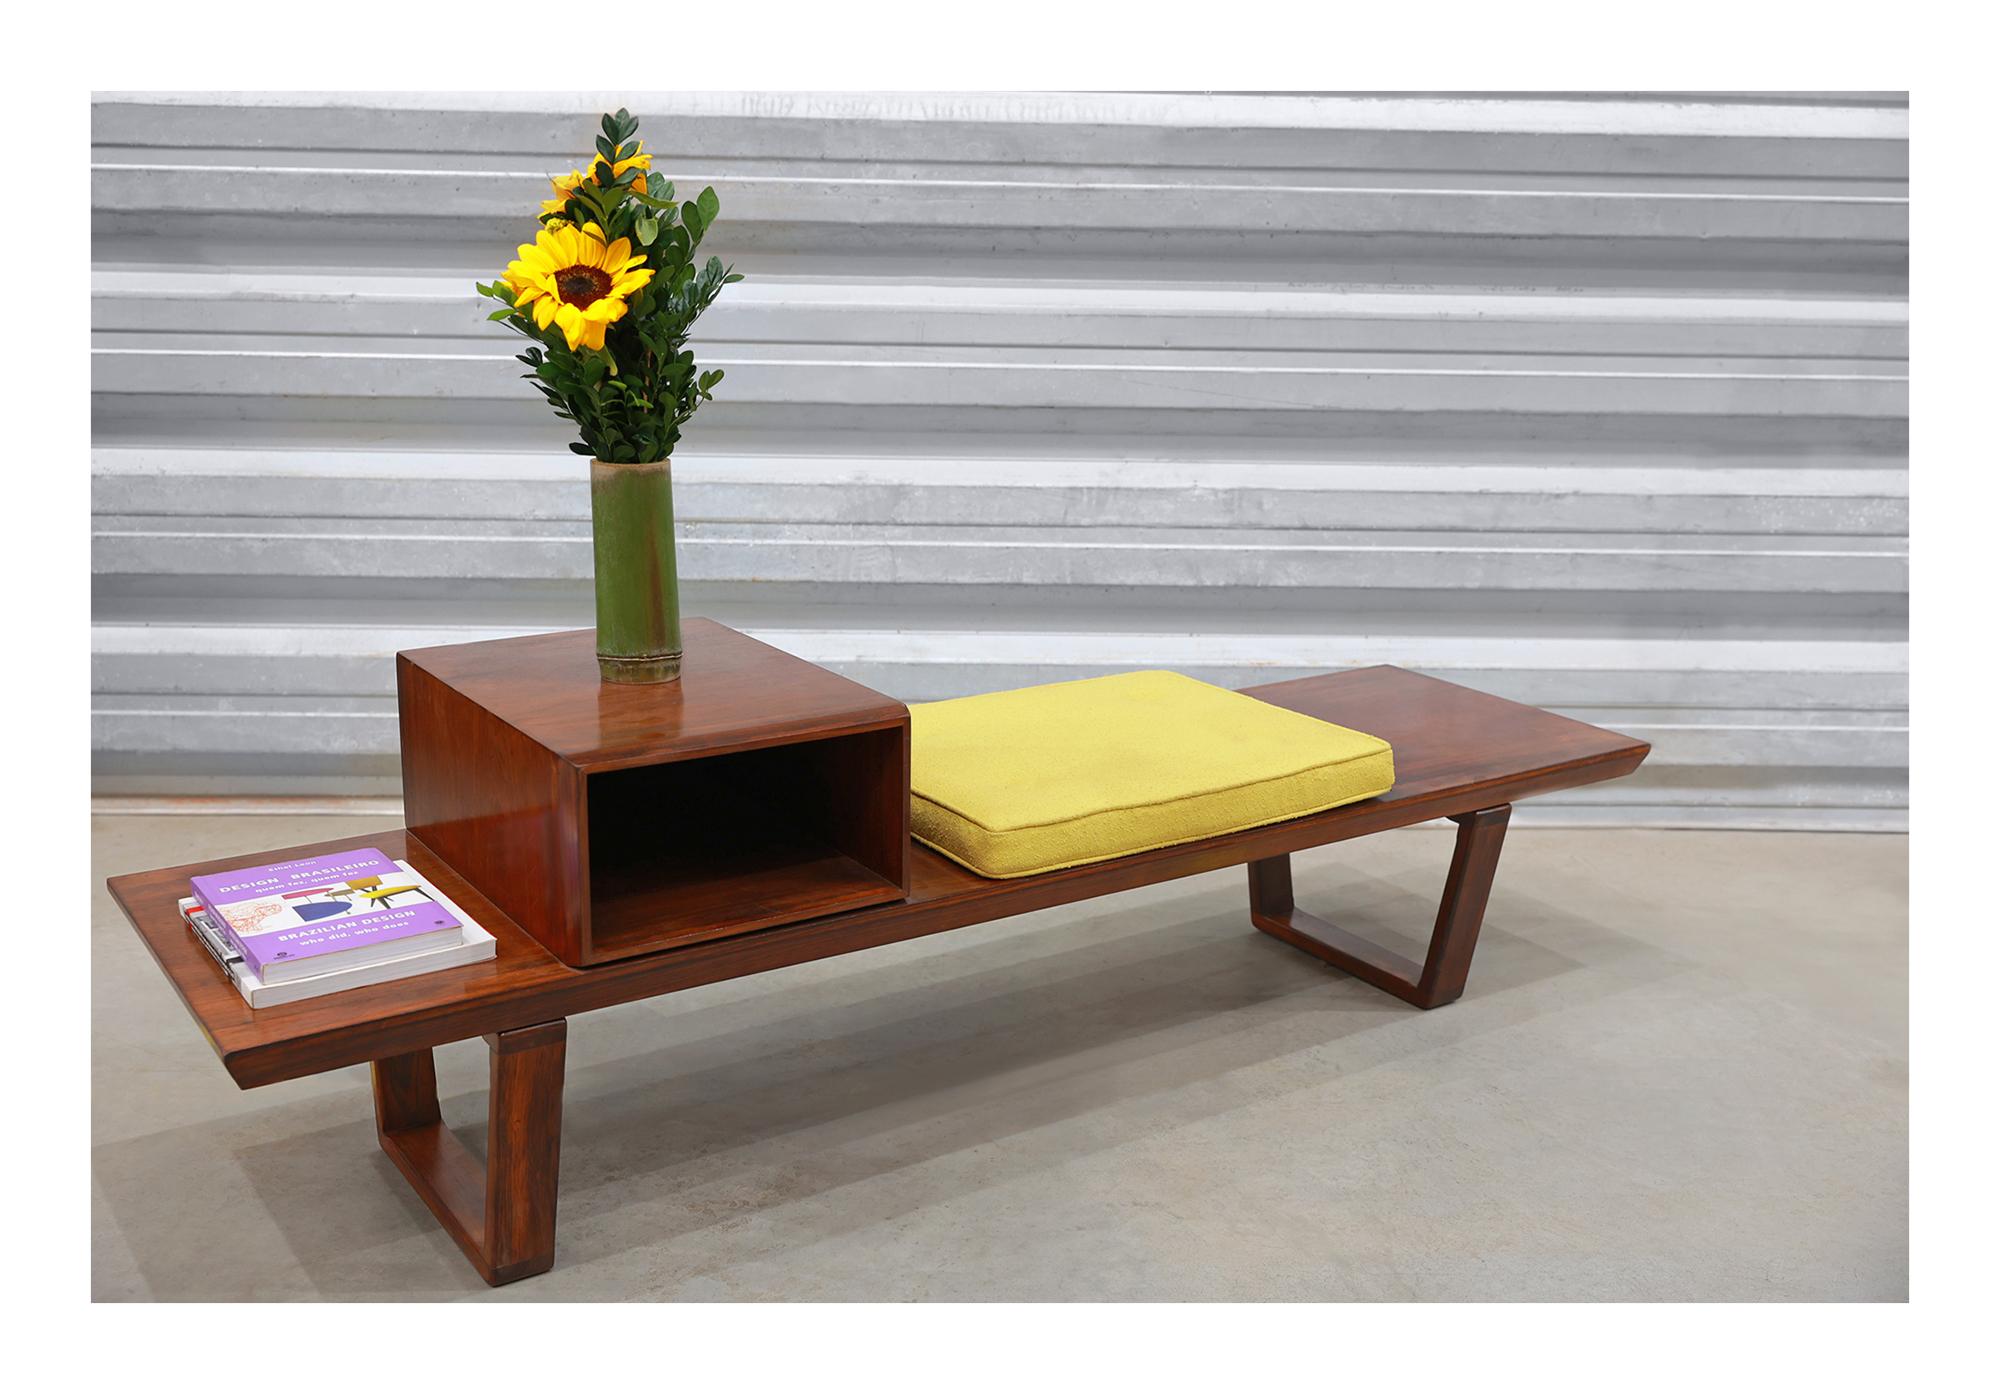 La banquette comporte deux pieds, un module pour le rangement et une assise avec un tissu jaune retapissé. La pièce est fabriquée en bois dur brésilien et présente une couleur et un motif magnifiques. Le bois a également été remis à neuf et est en